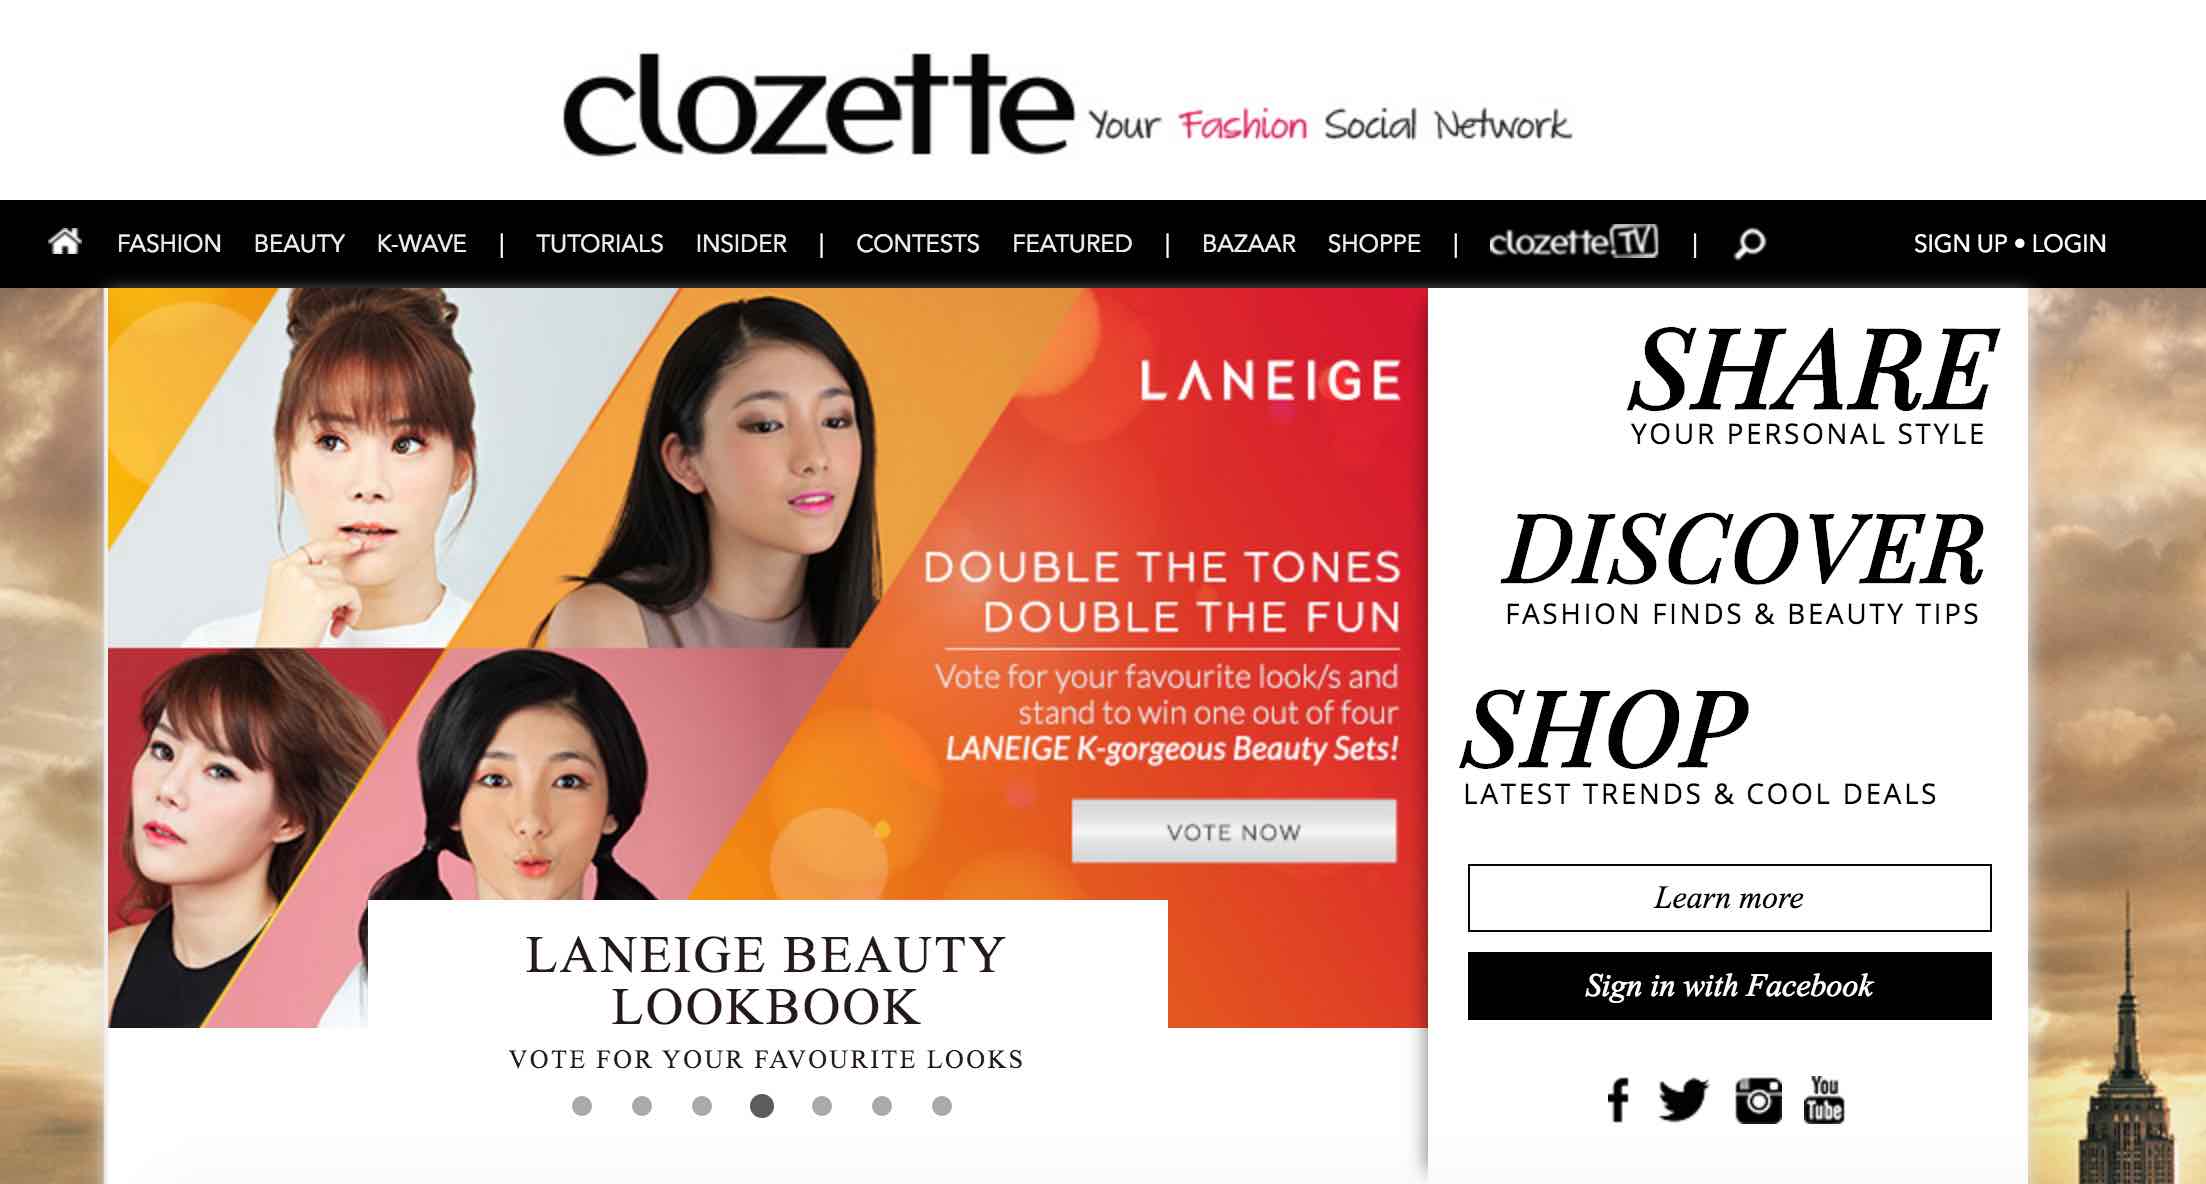 Clozette Singapore - AspirantSG